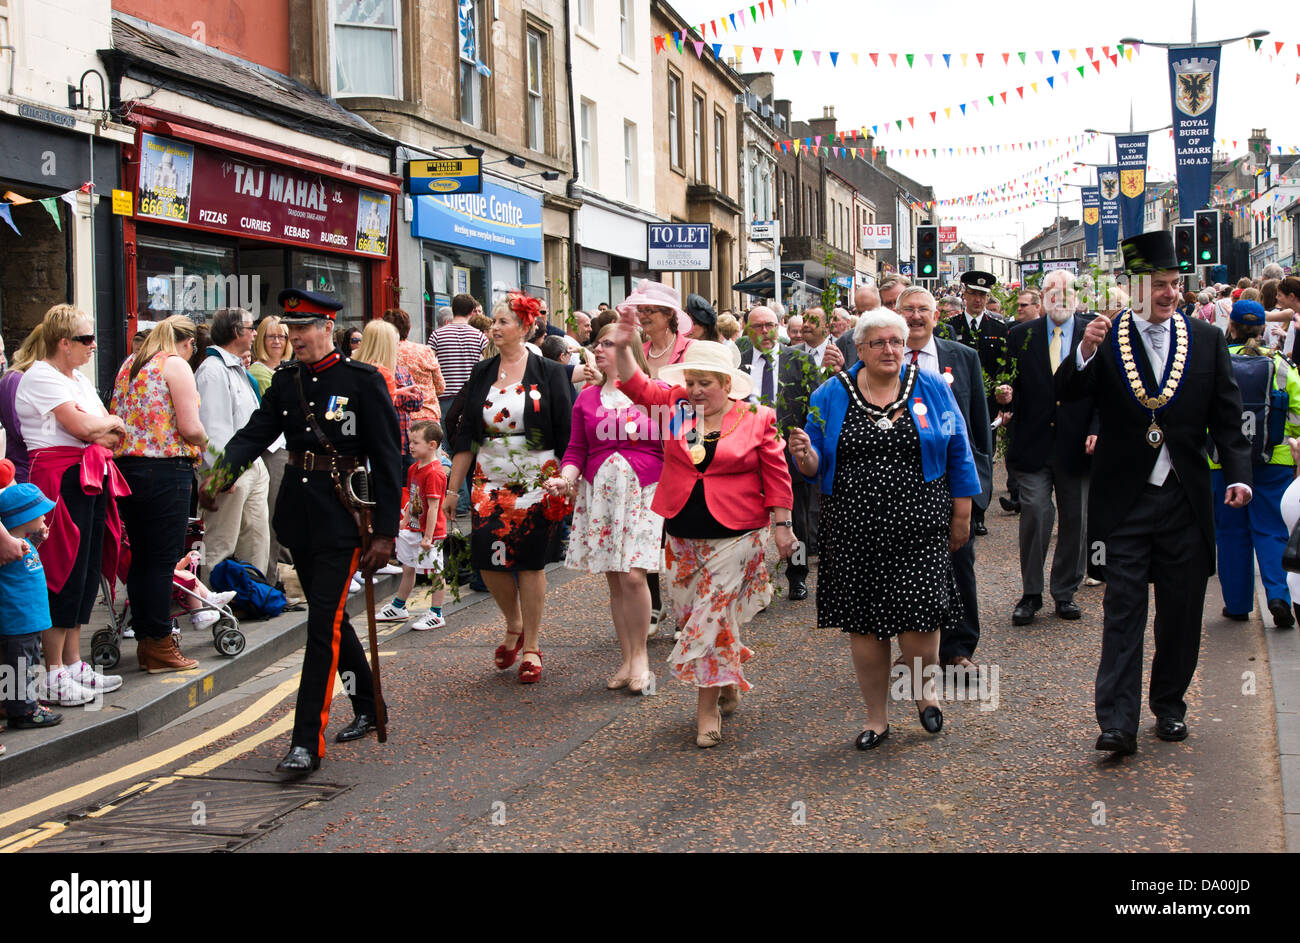 Le maire et les responsables du Lanimer jour procession qui a lieu chaque année en juin dans la région de Lanark, Lanarkshire, Écosse Banque D'Images